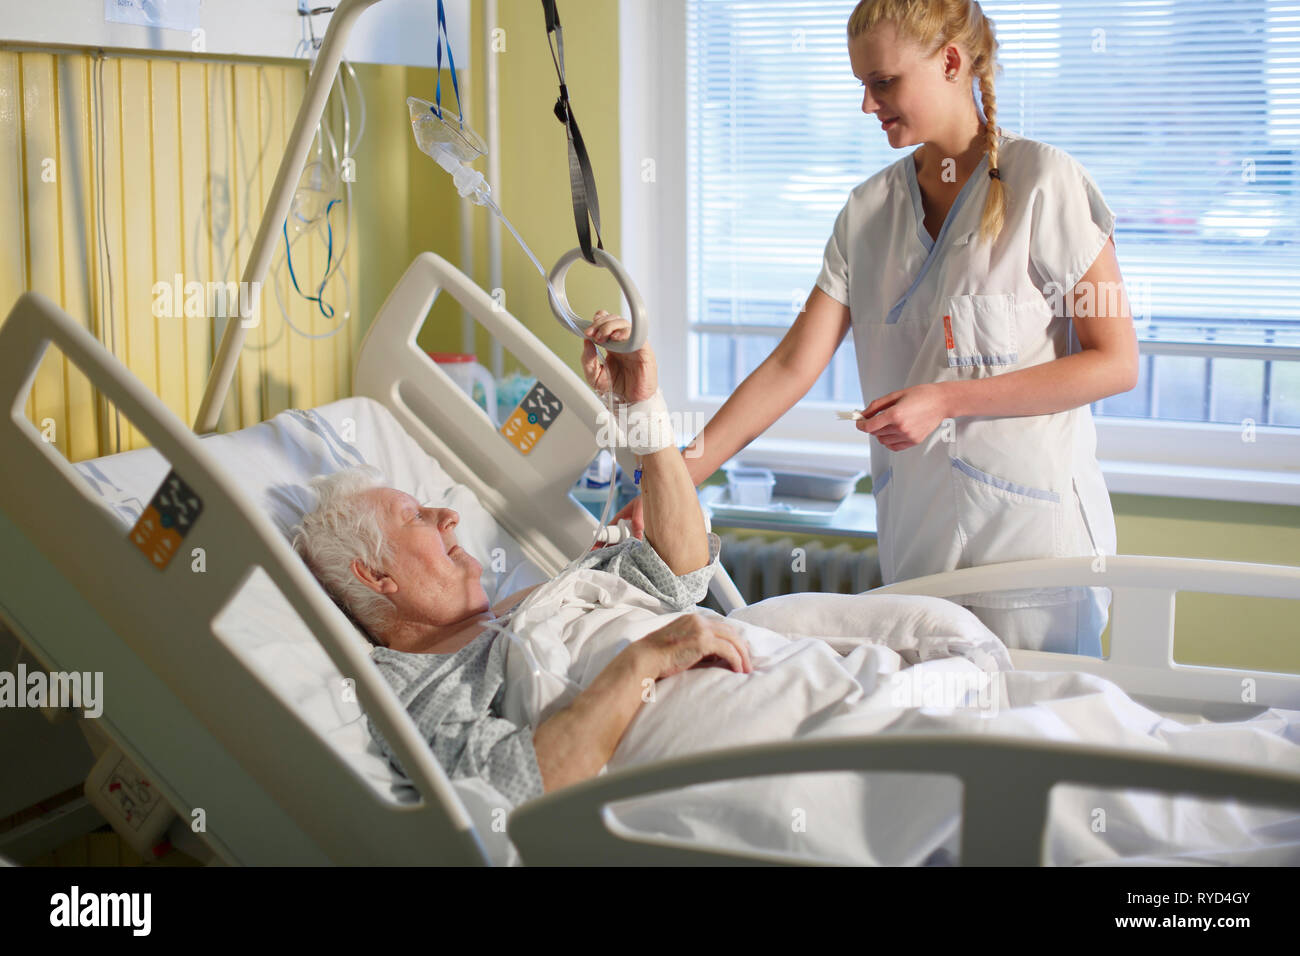 Une infirmière prend soin d'un patient dans un lit d'hôpital, Karlovy Vary, République tchèque,Europe Banque D'Images